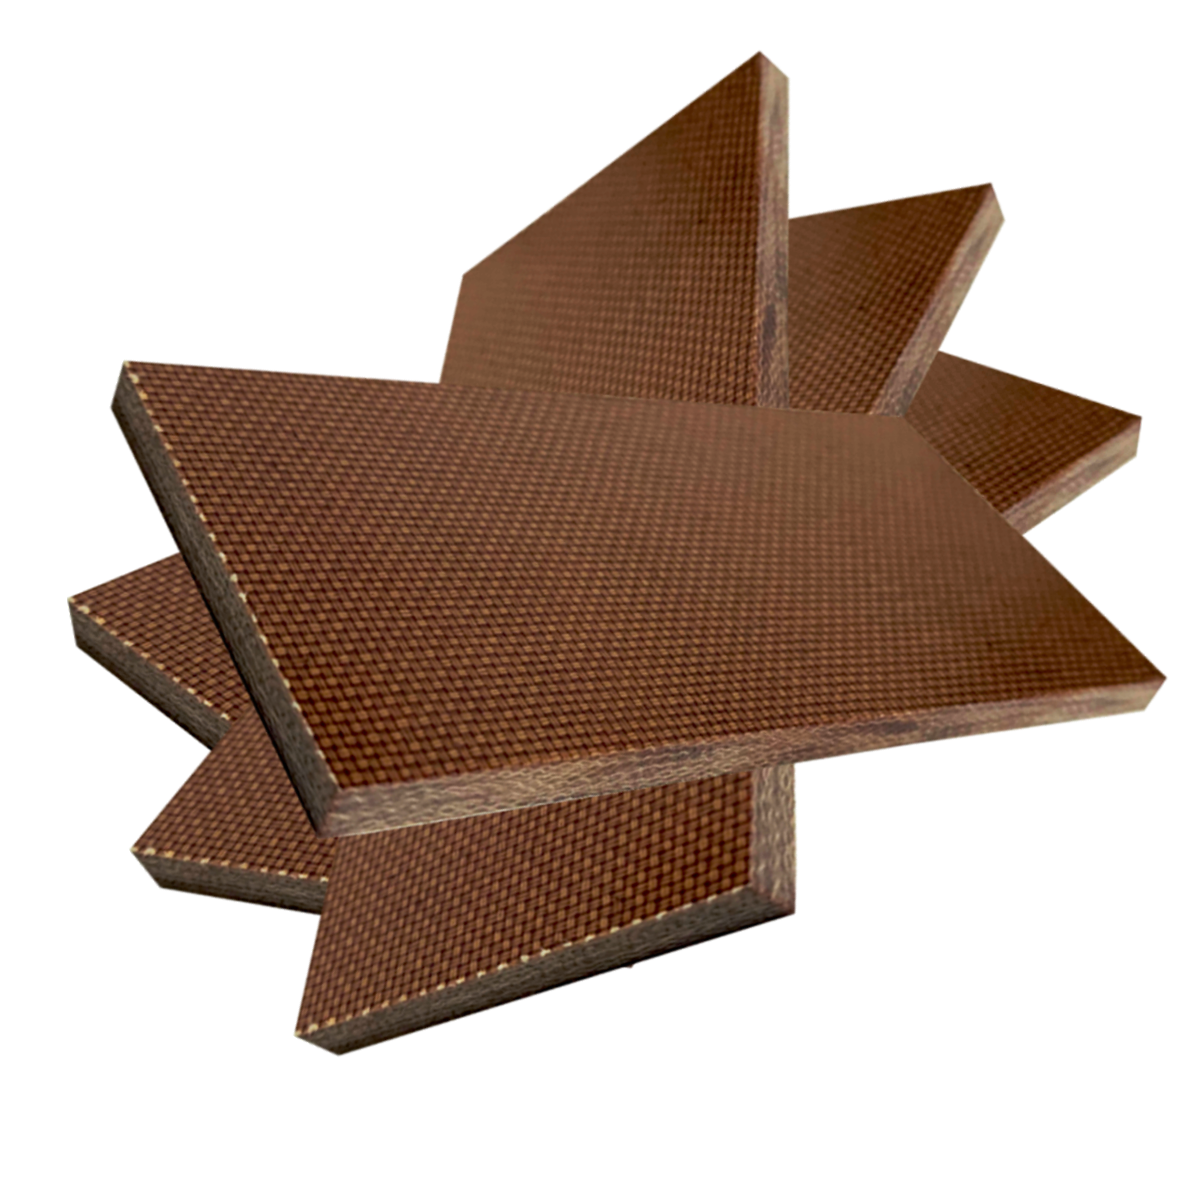 4 KUSY - Přířez z desky - Textit, Texgumoid  - 1 x 500 x 500 mm